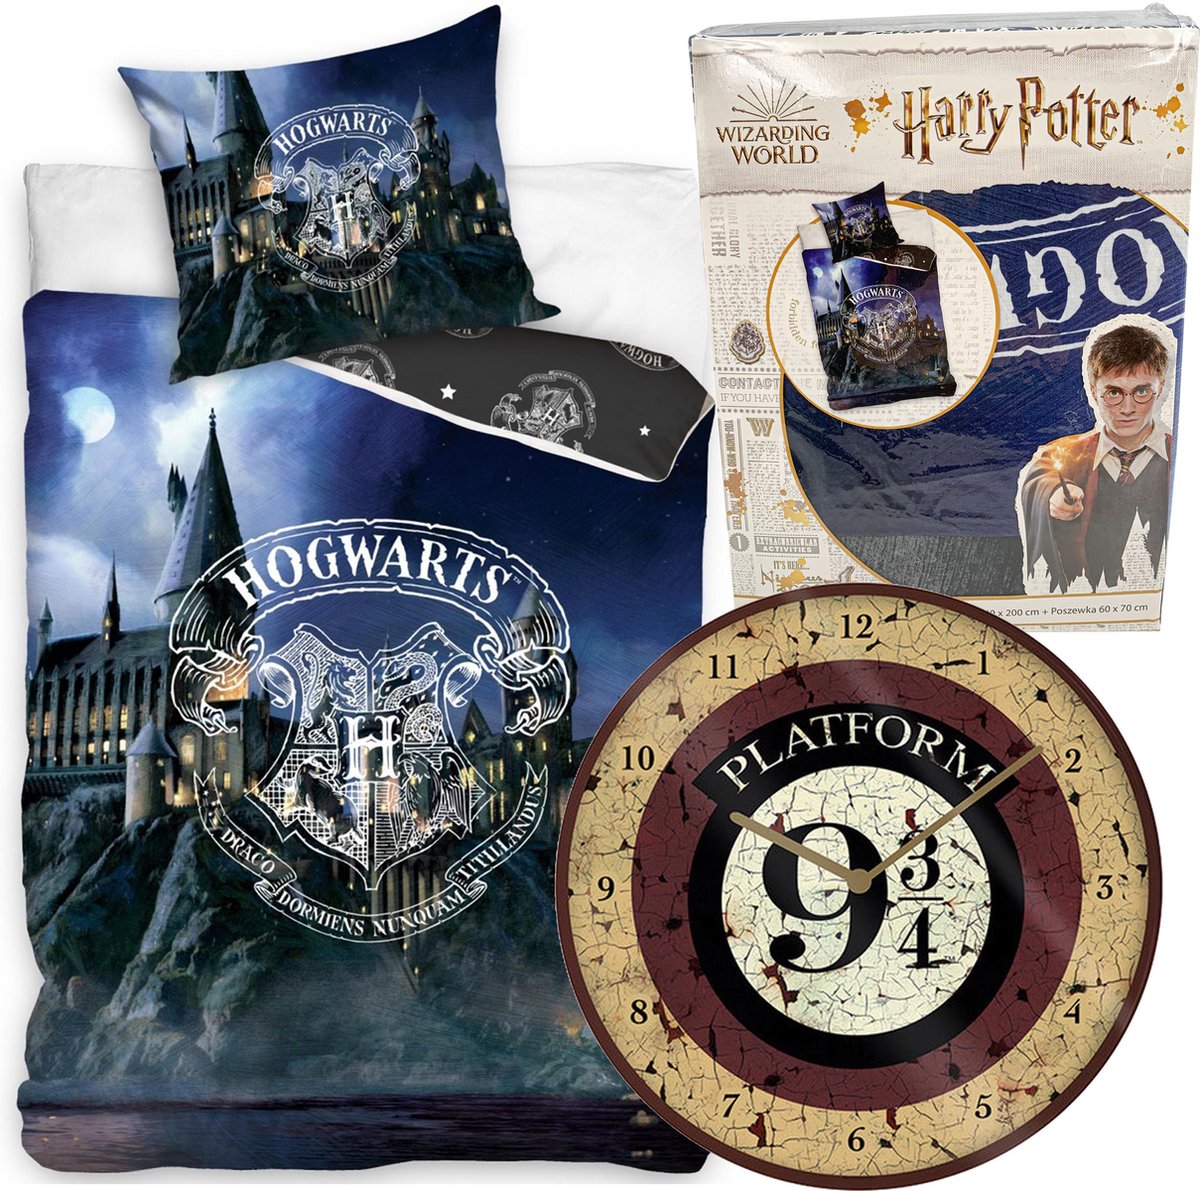 Harry Potter Dekbedovertrek Hogwarts - Eenpersoons - 140 x 200 cm - katoen - Jongens meisjes dekbed - incl. Platvorm 9.3/4 wandklok 25cm